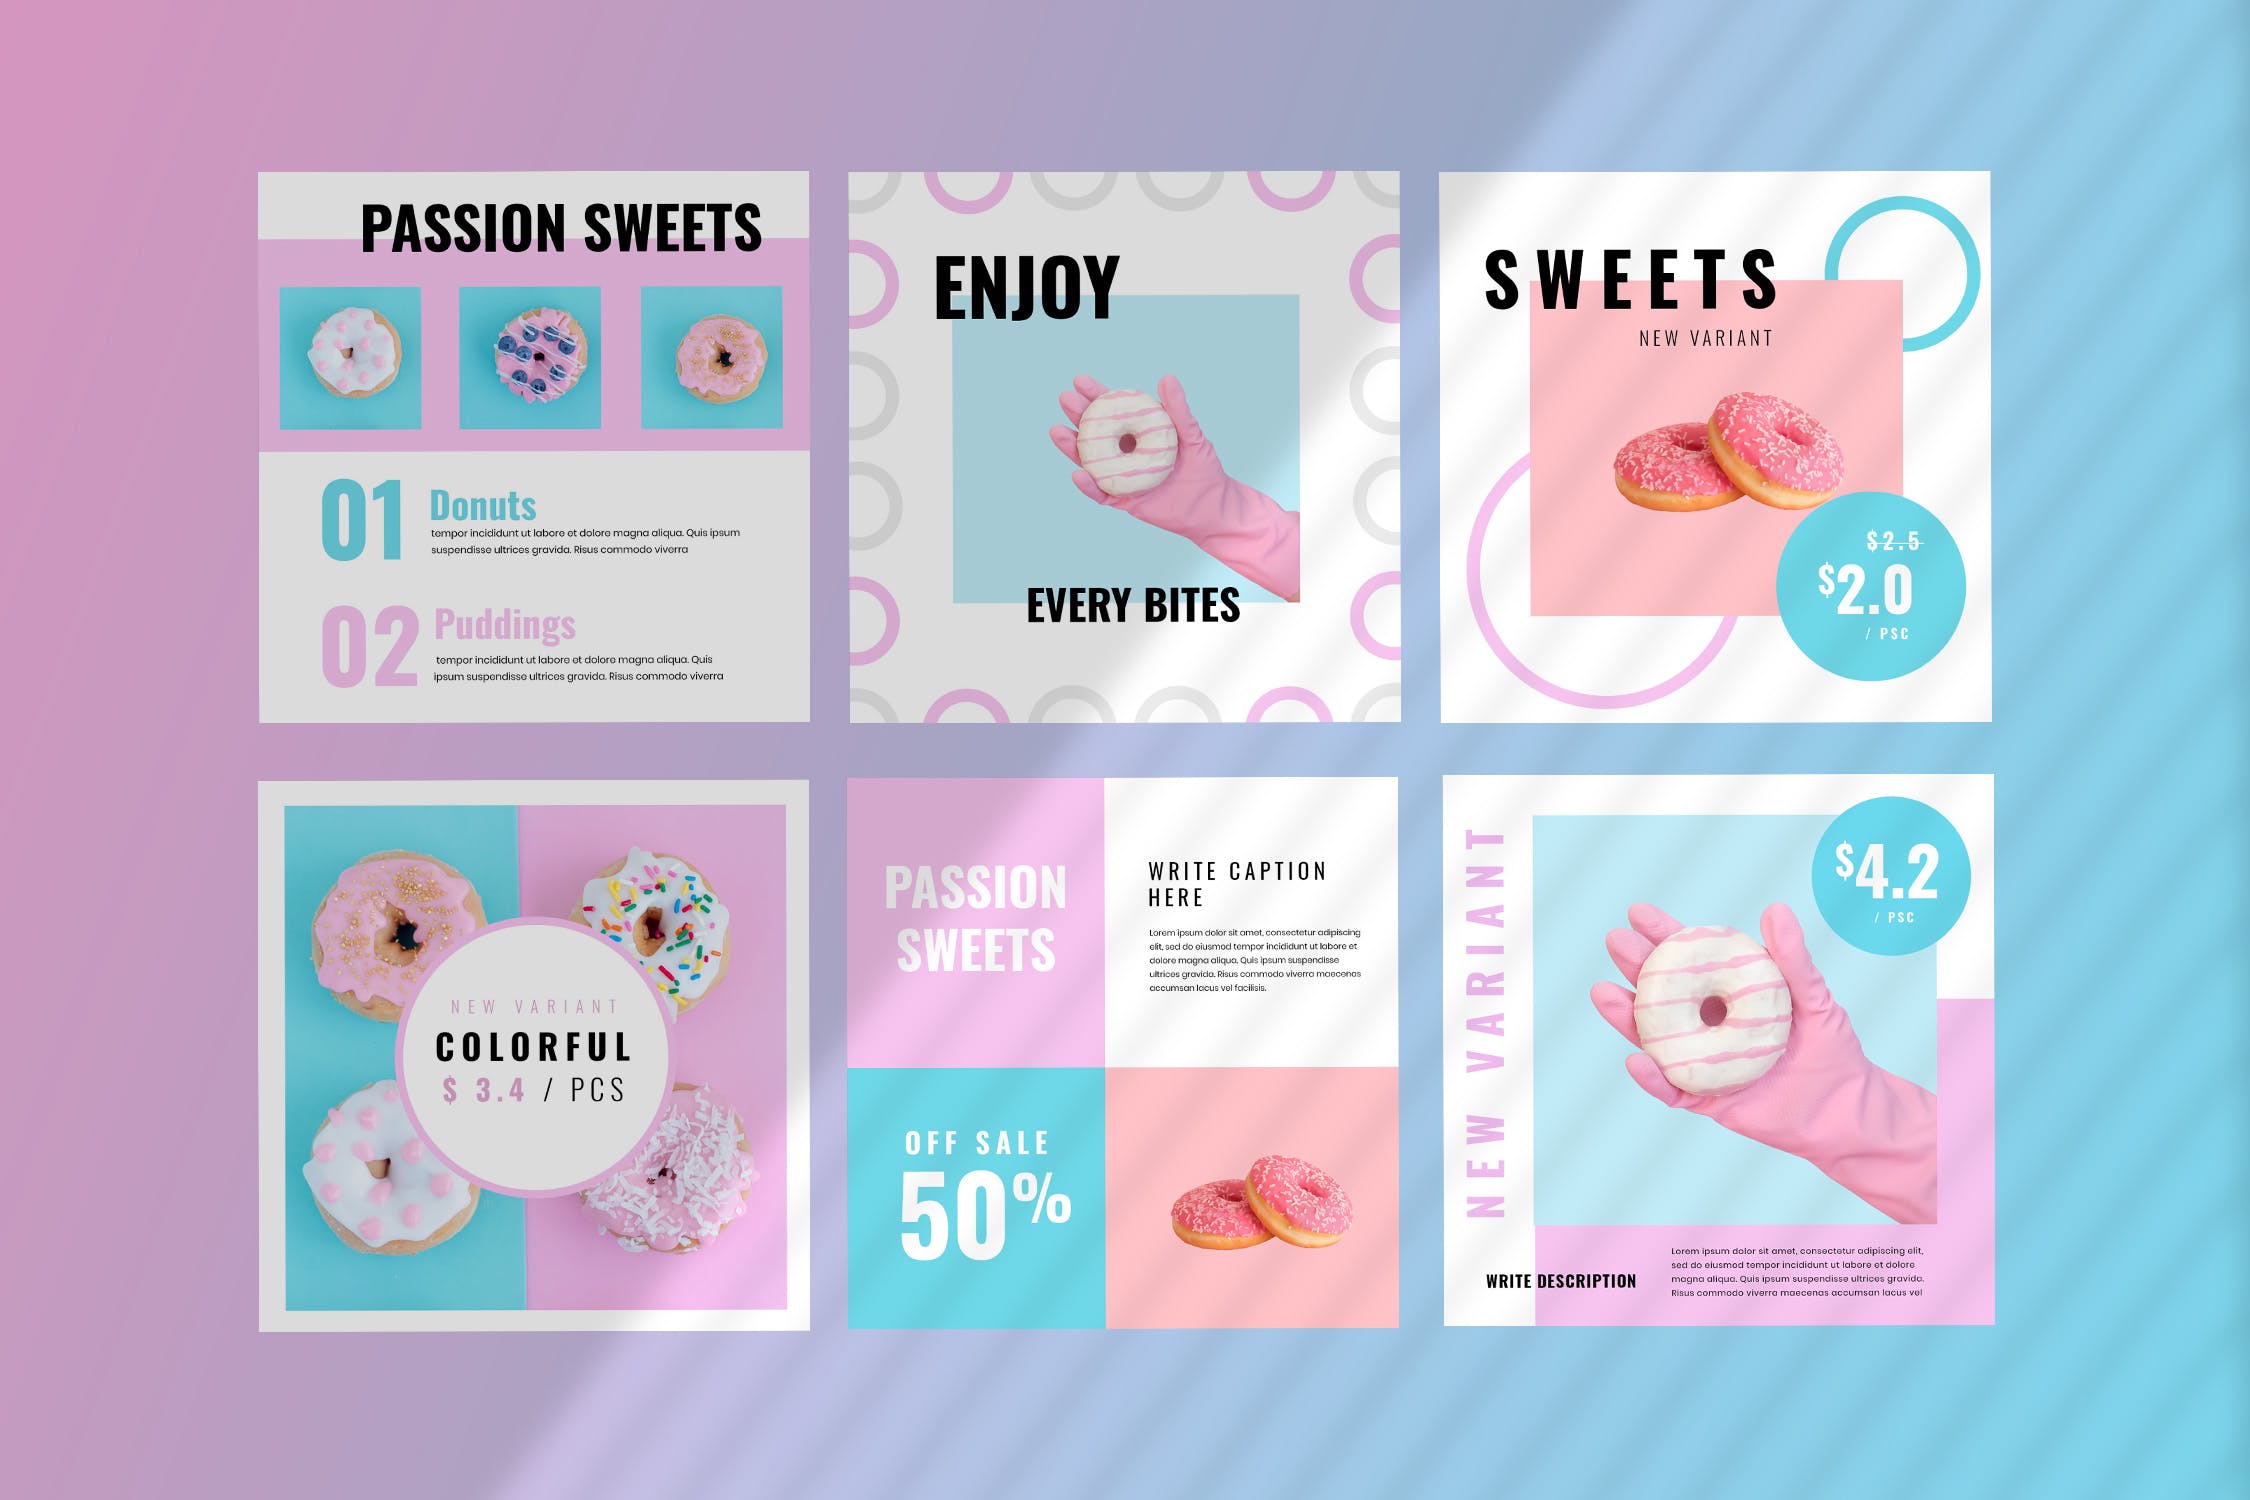 烘焙糕点面包品牌社交推广设计素材包 Fiveteen – Social Media Kit插图(1)